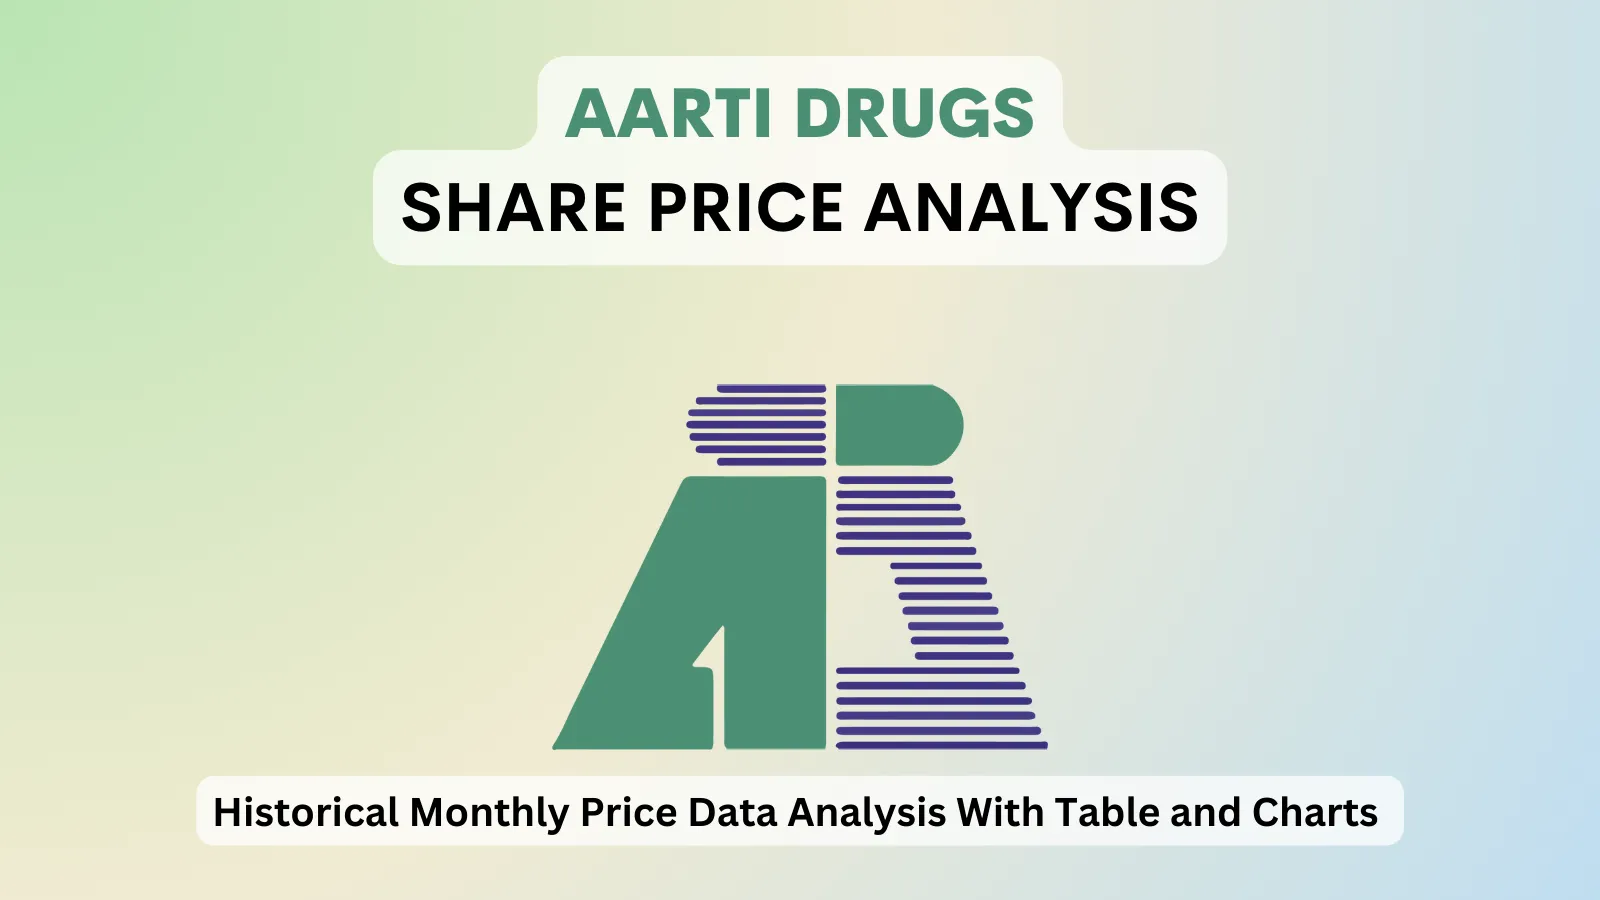 Aarti Drugs share price analysis